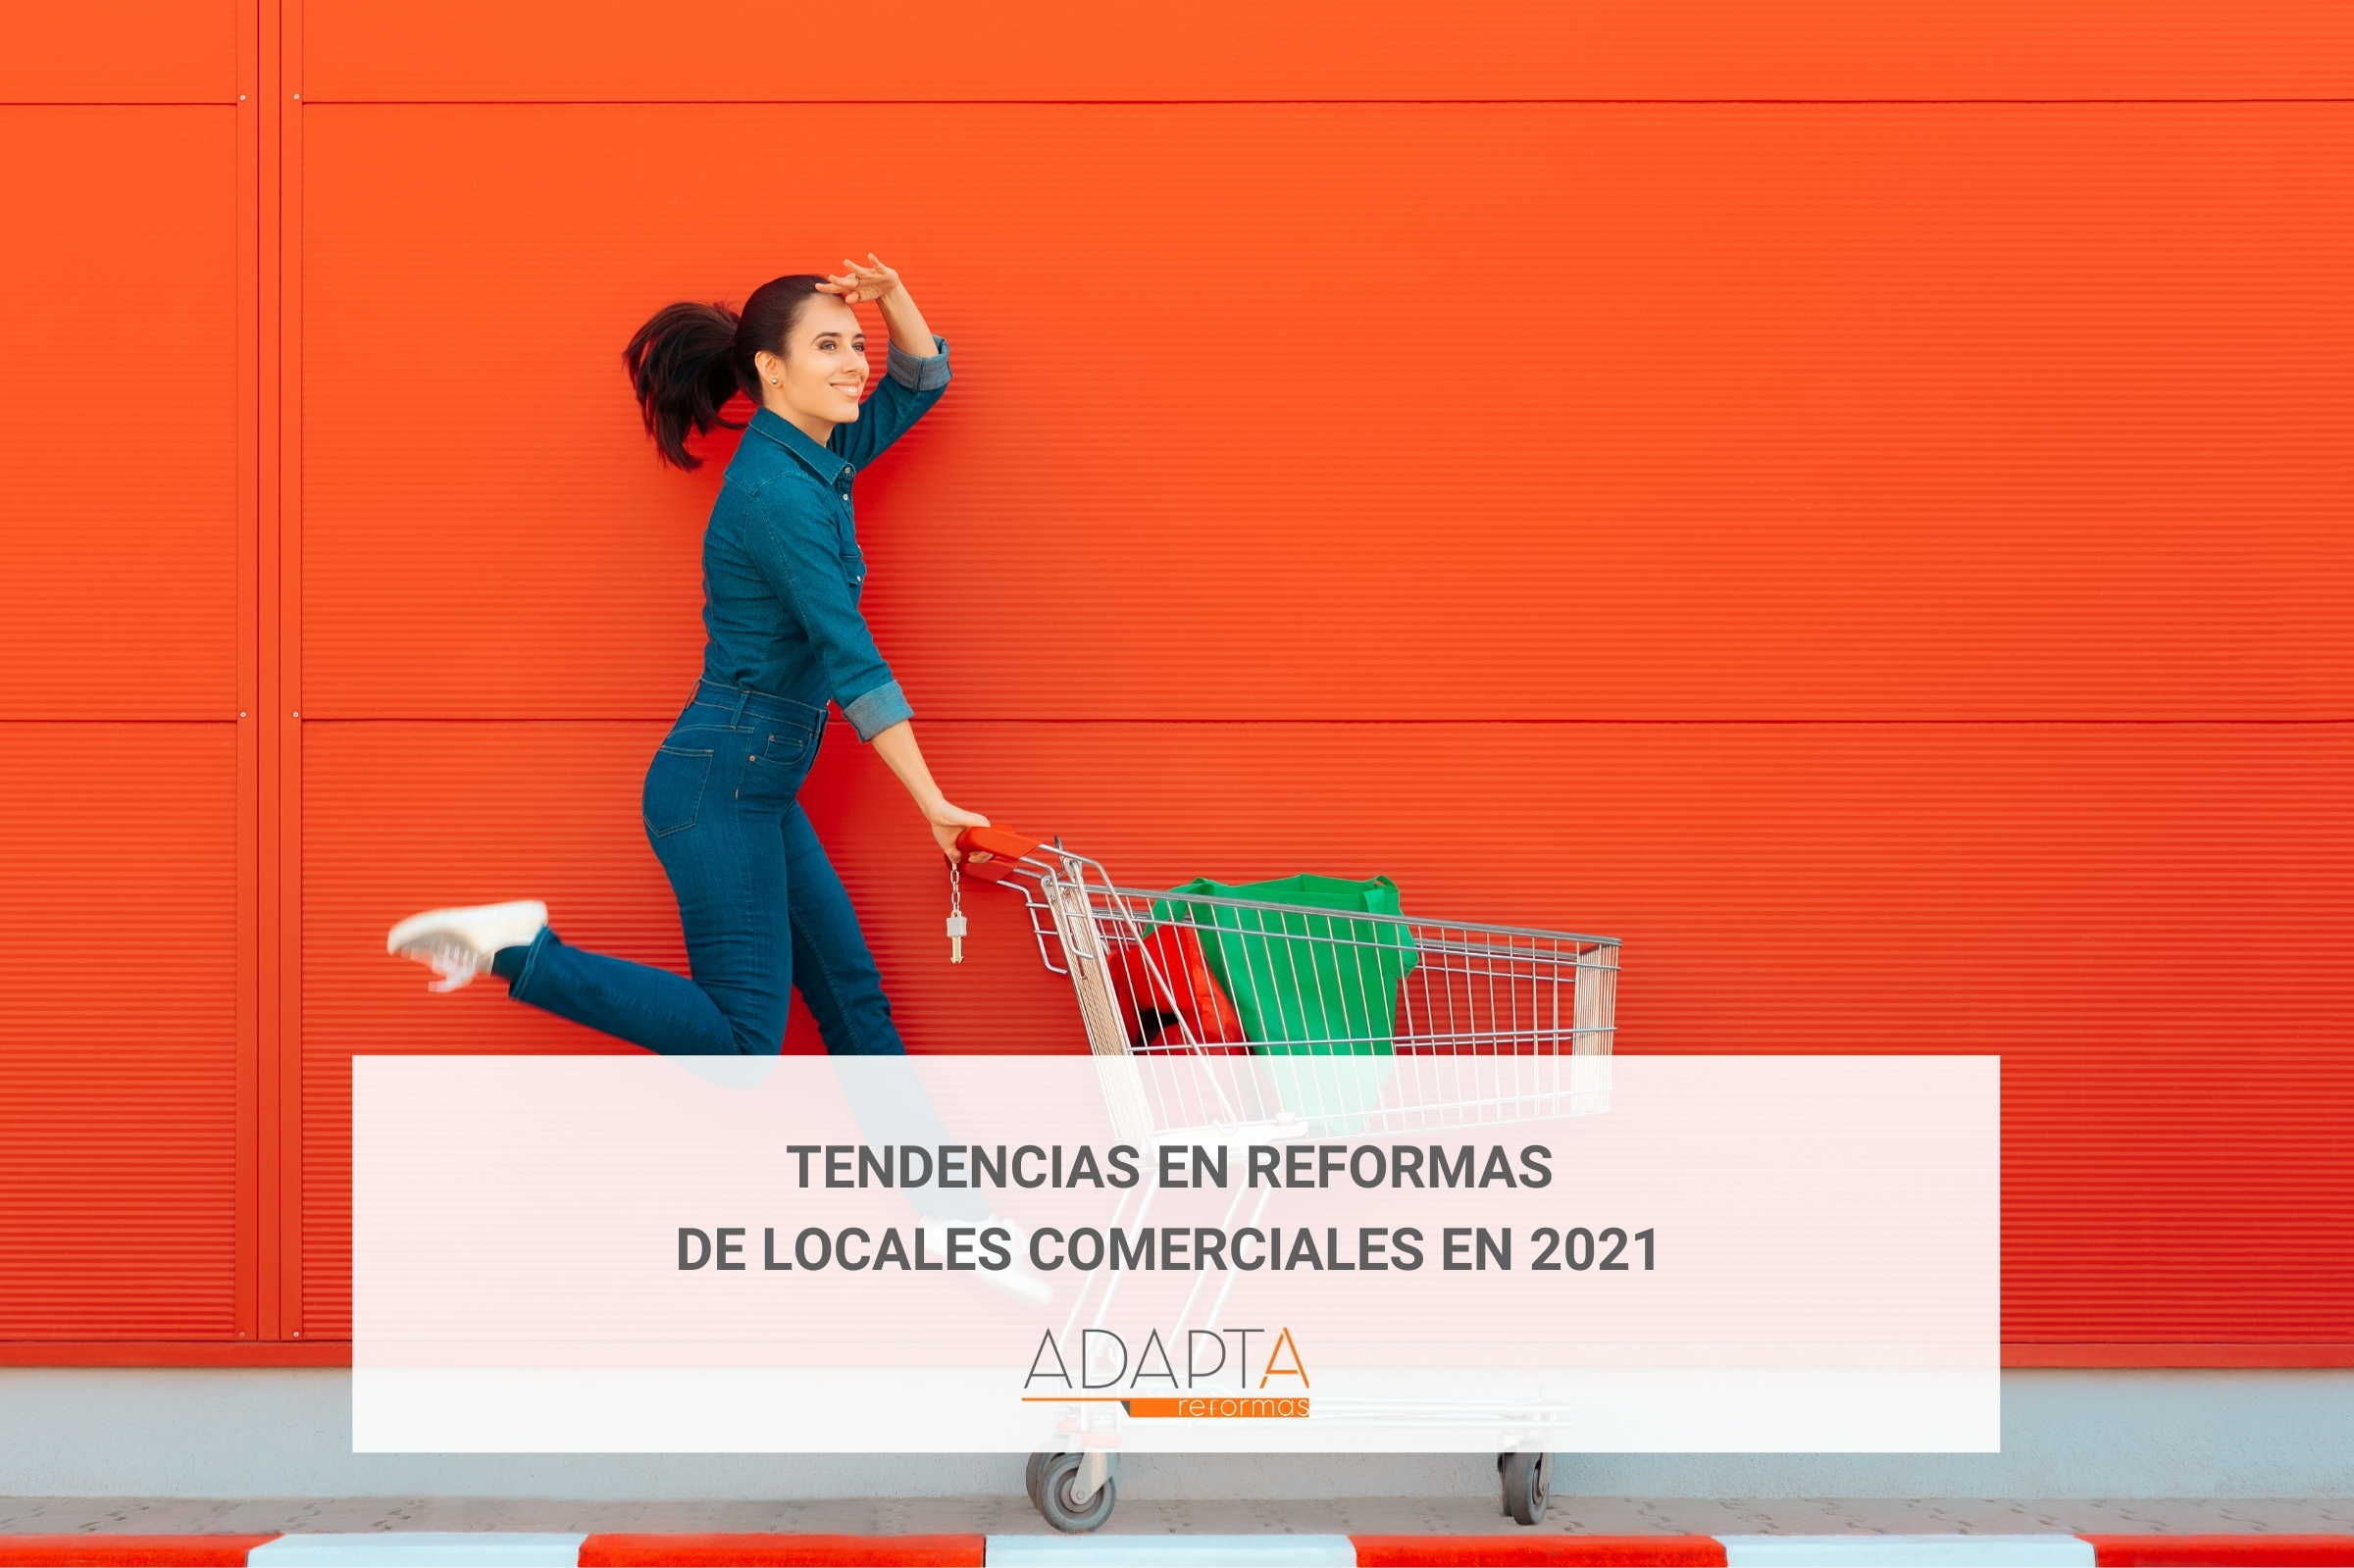 Tendencias en reformas de locales comerciales en 2021